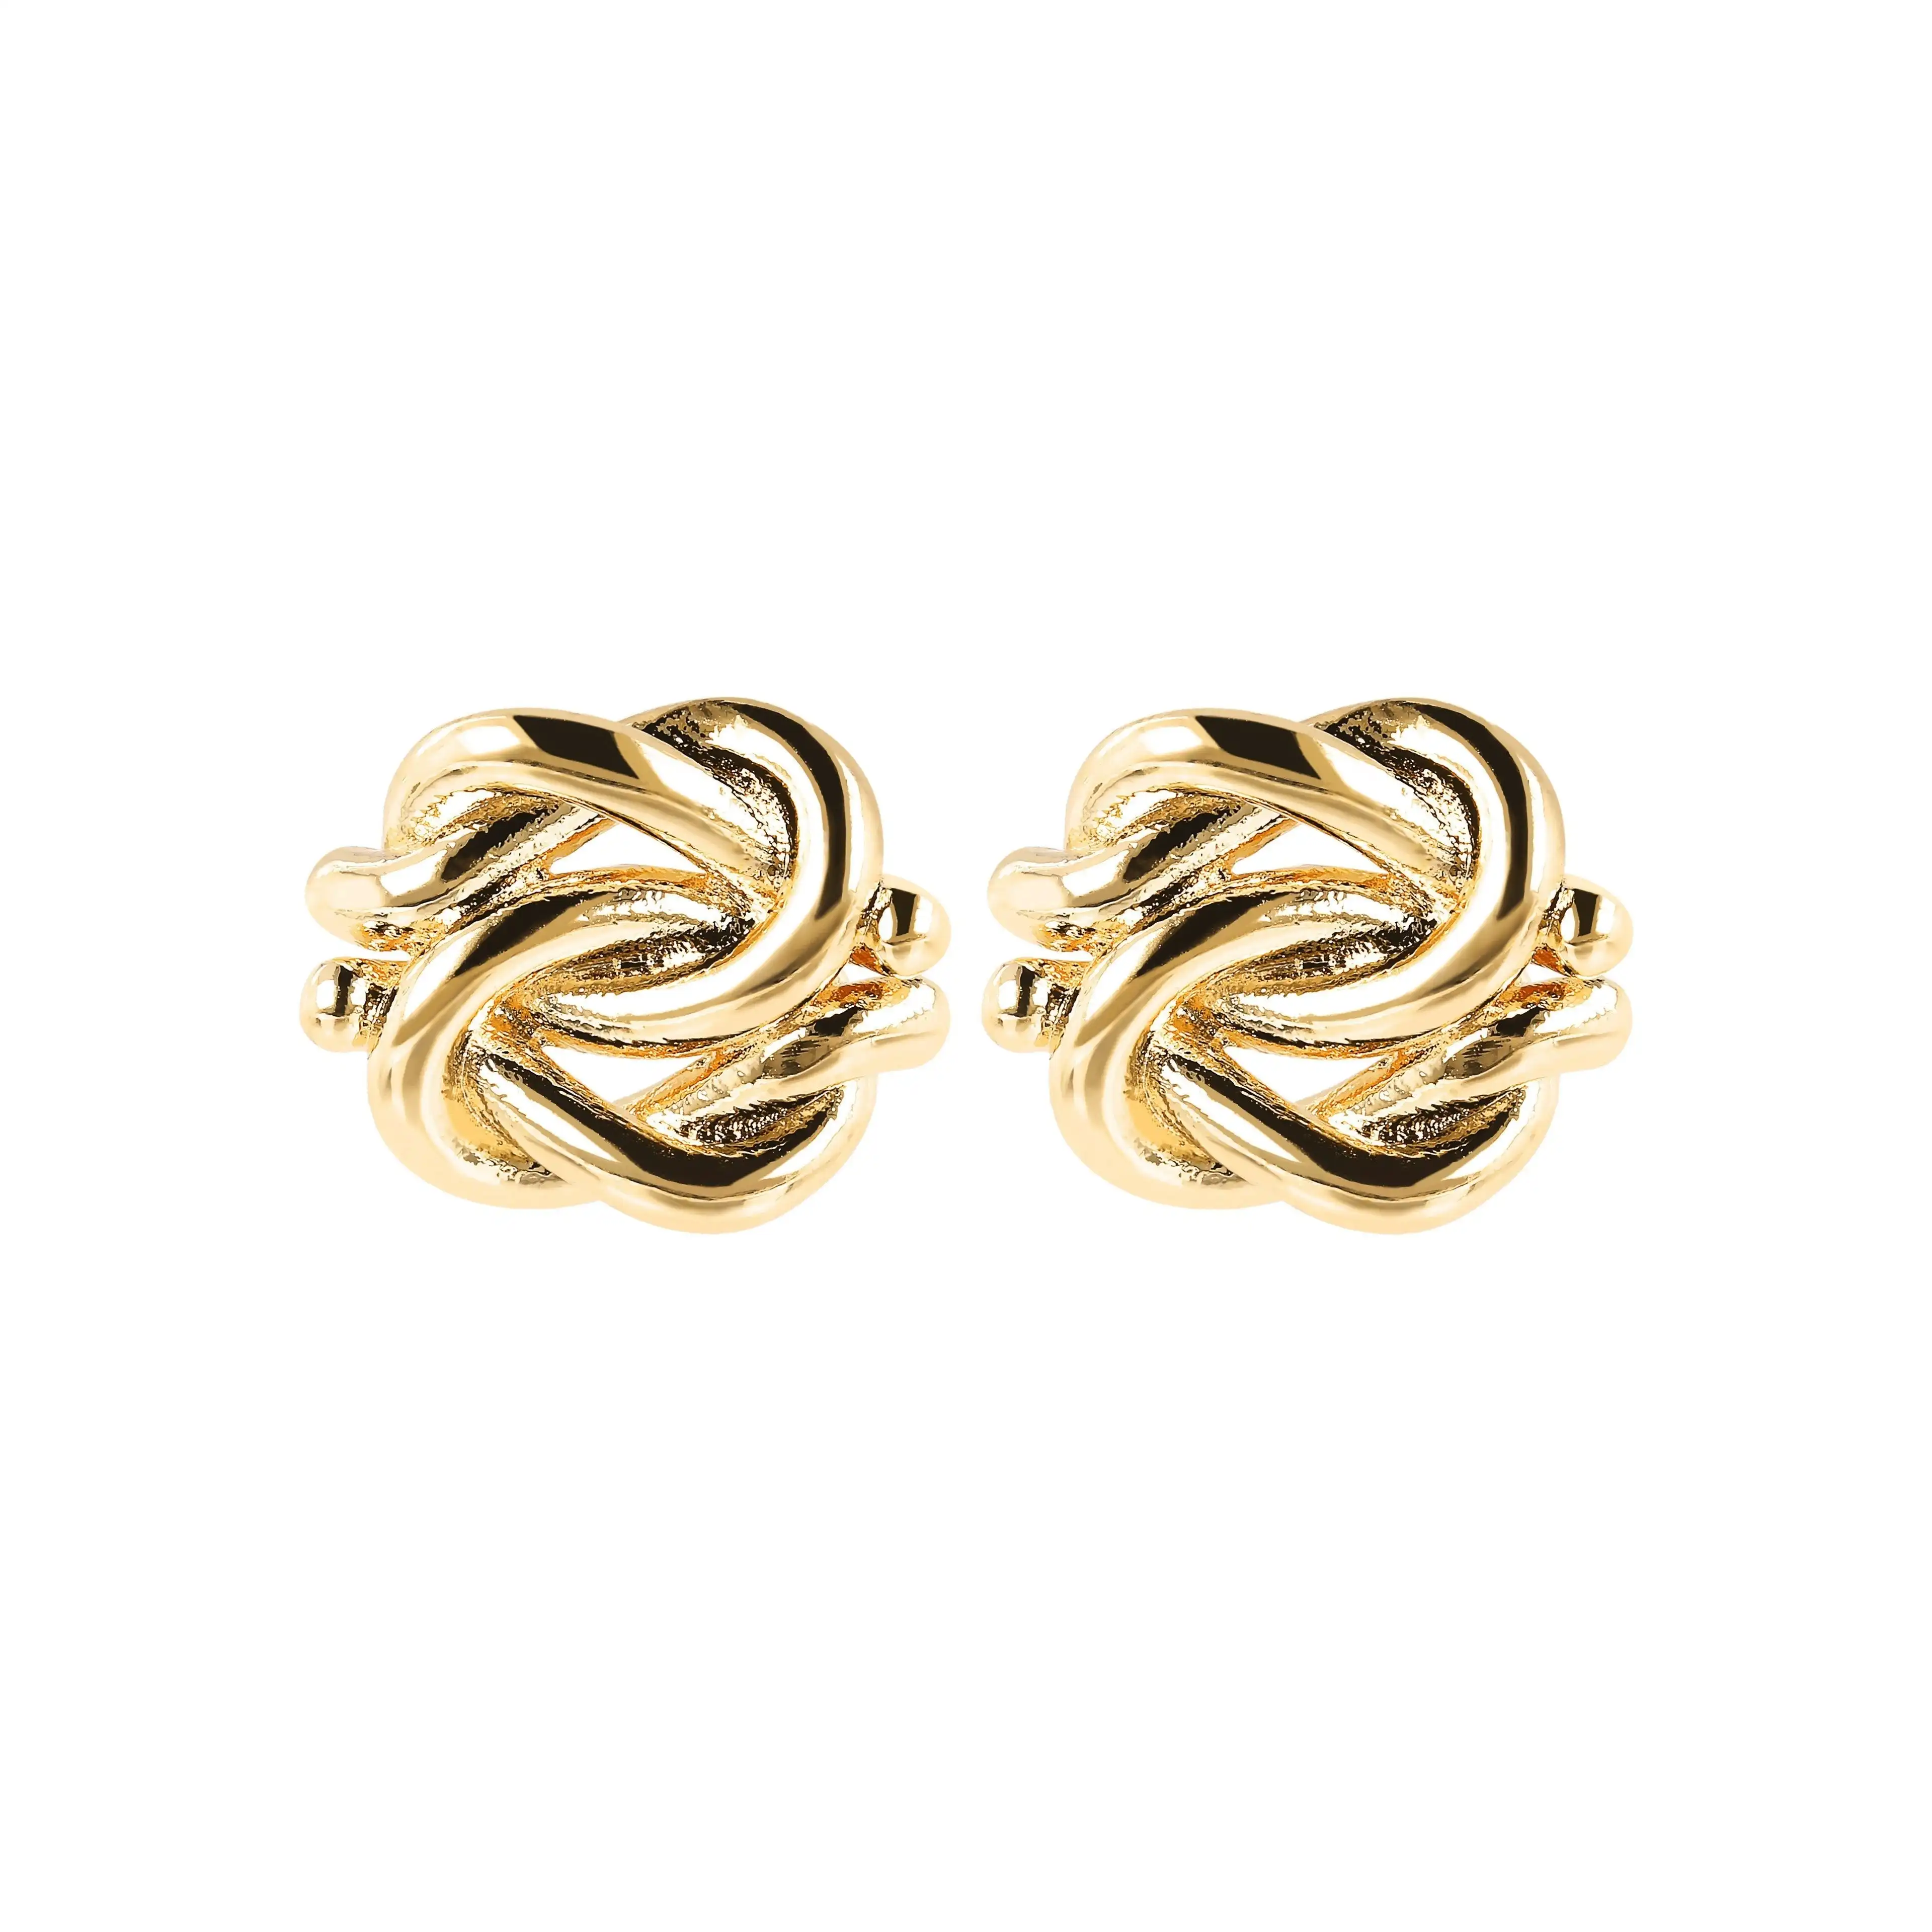 Bronzallure Knot Golden Earrings